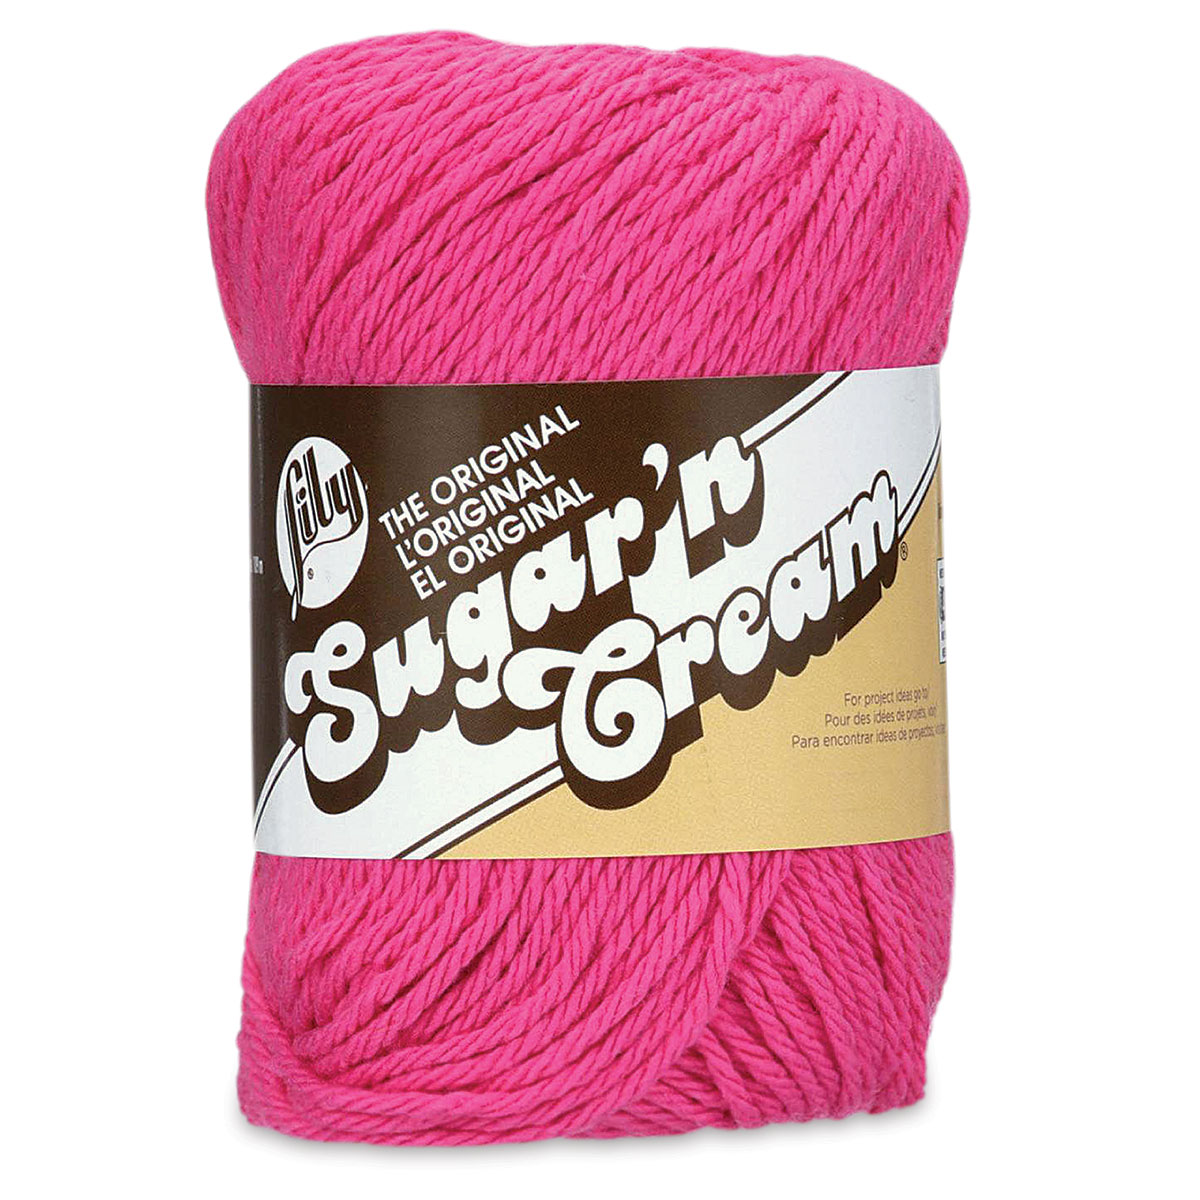 Lily Sugar N' Cream Yarn - 2 oz, 4-Ply, Stonewash